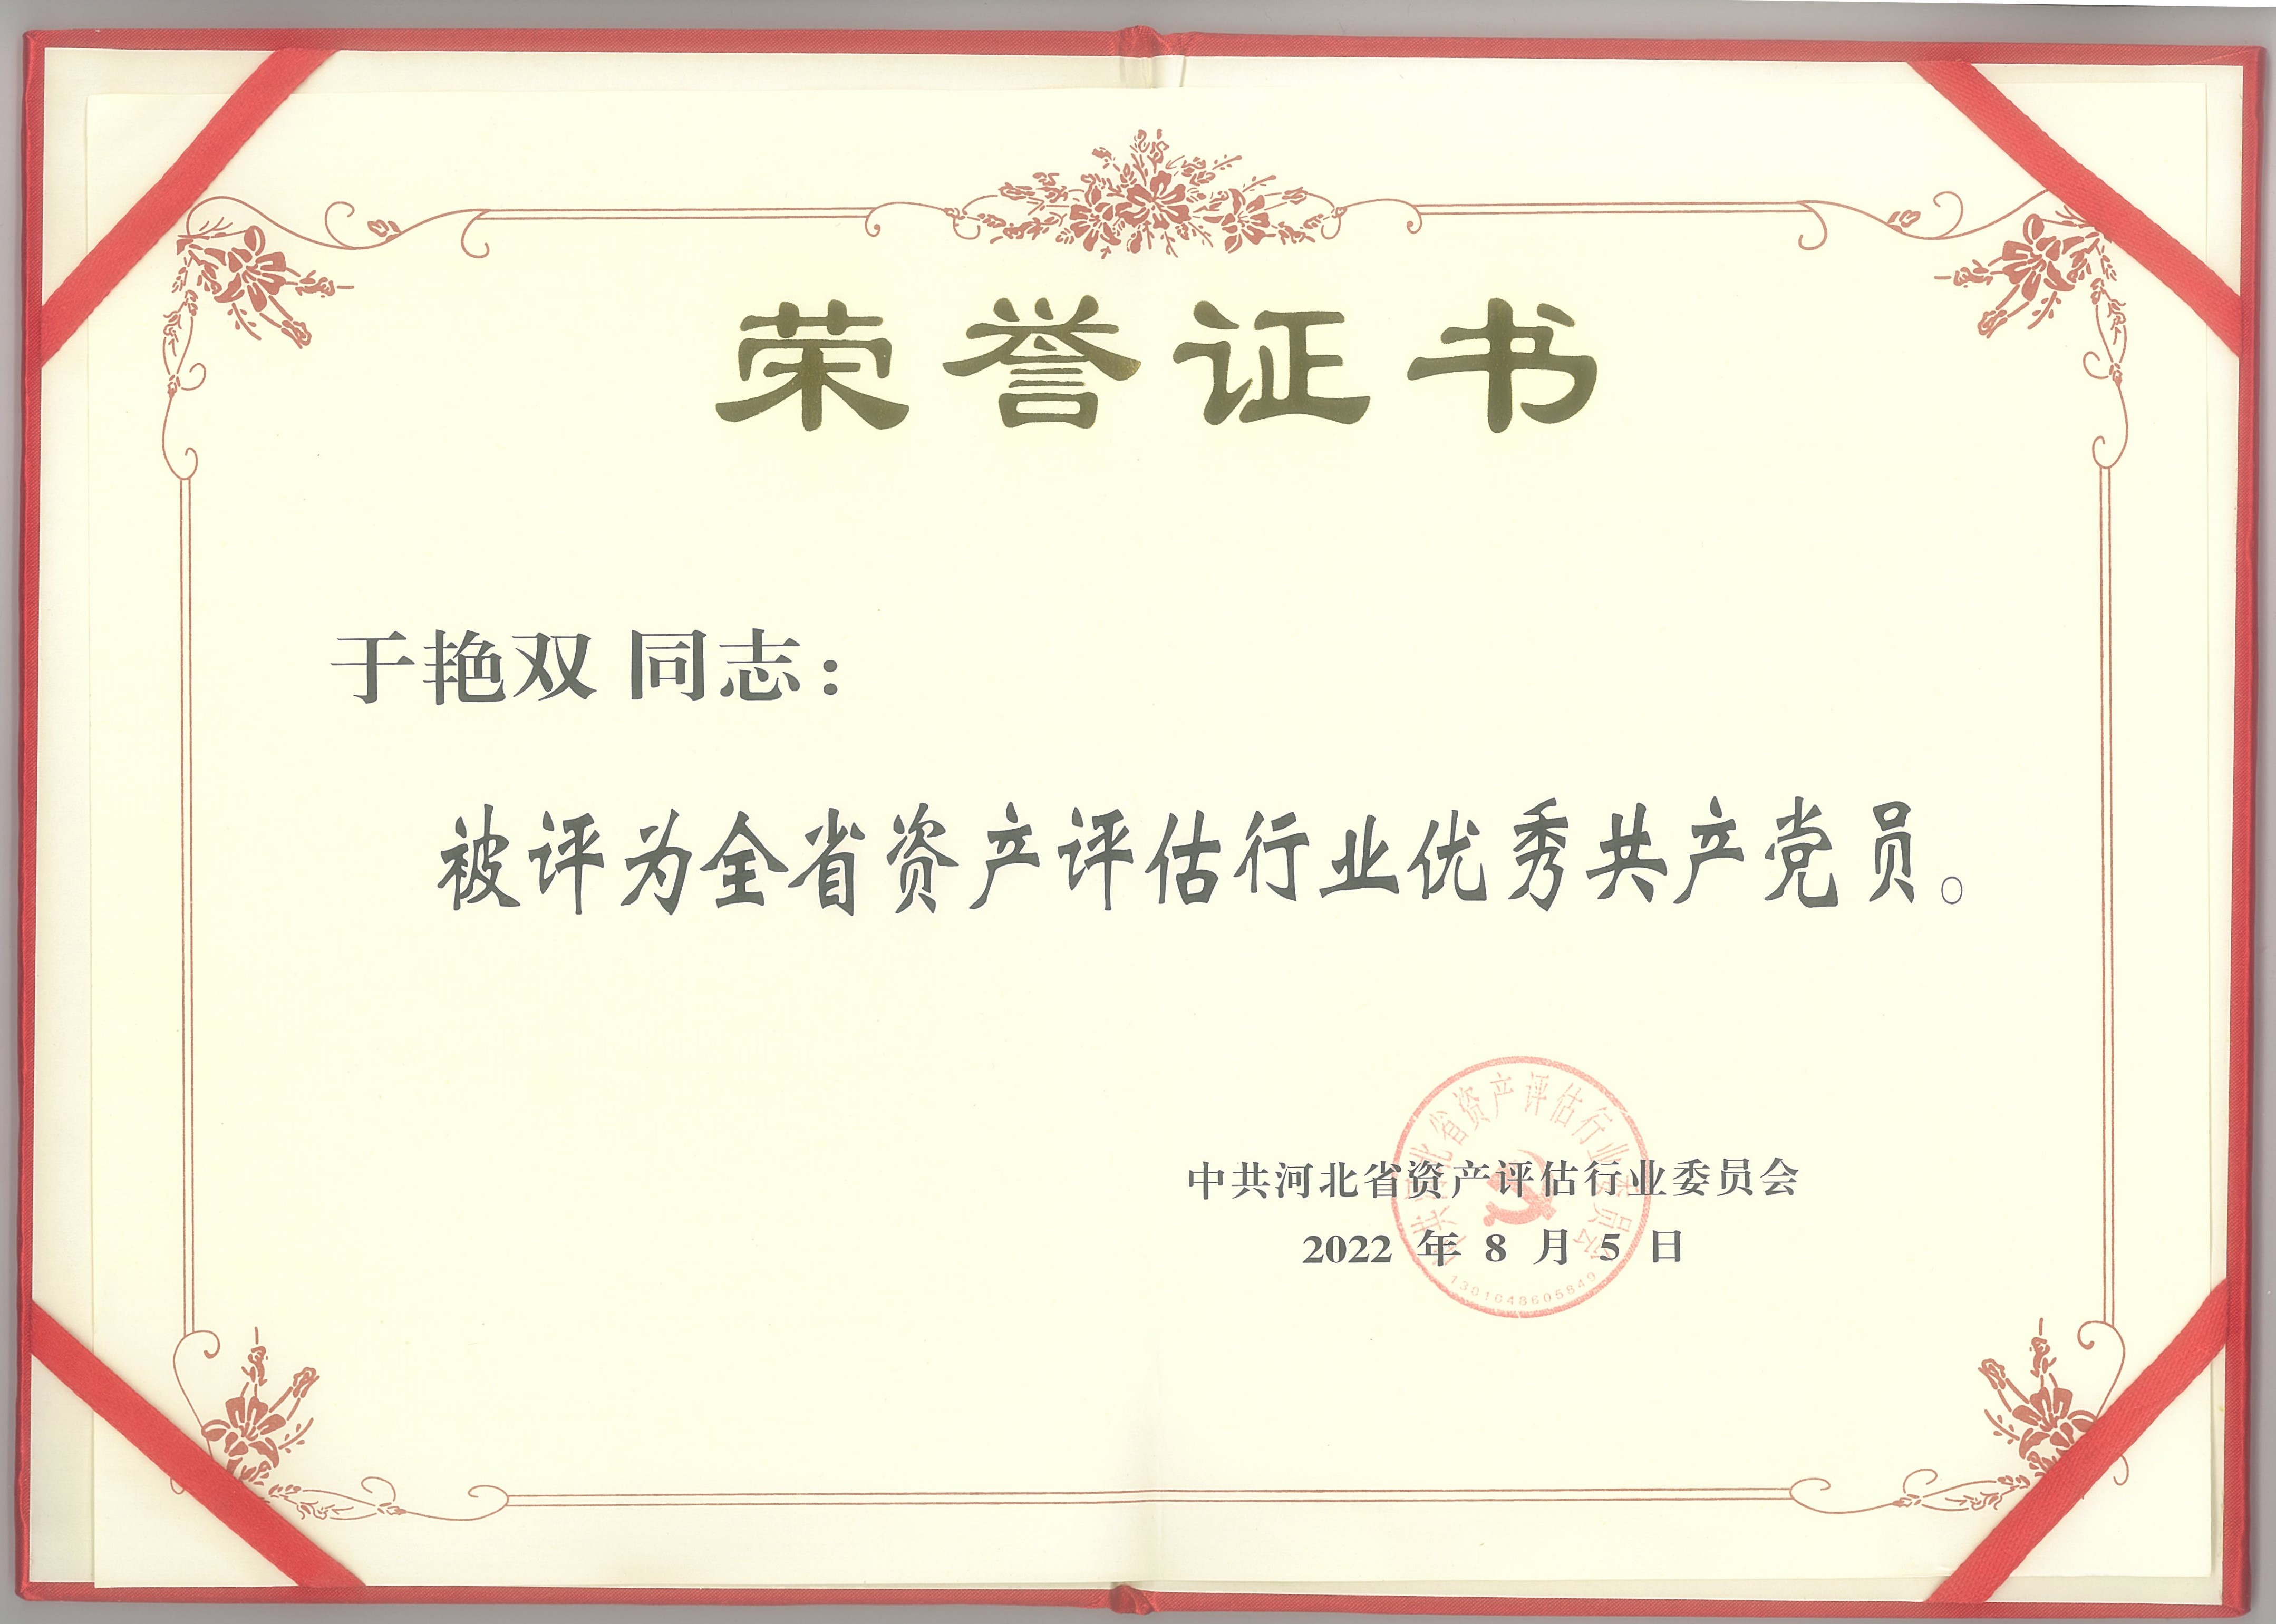 我单位于艳双、陈领齐同志被评为优秀共产党员和支持党建工作（党外）优秀合伙人